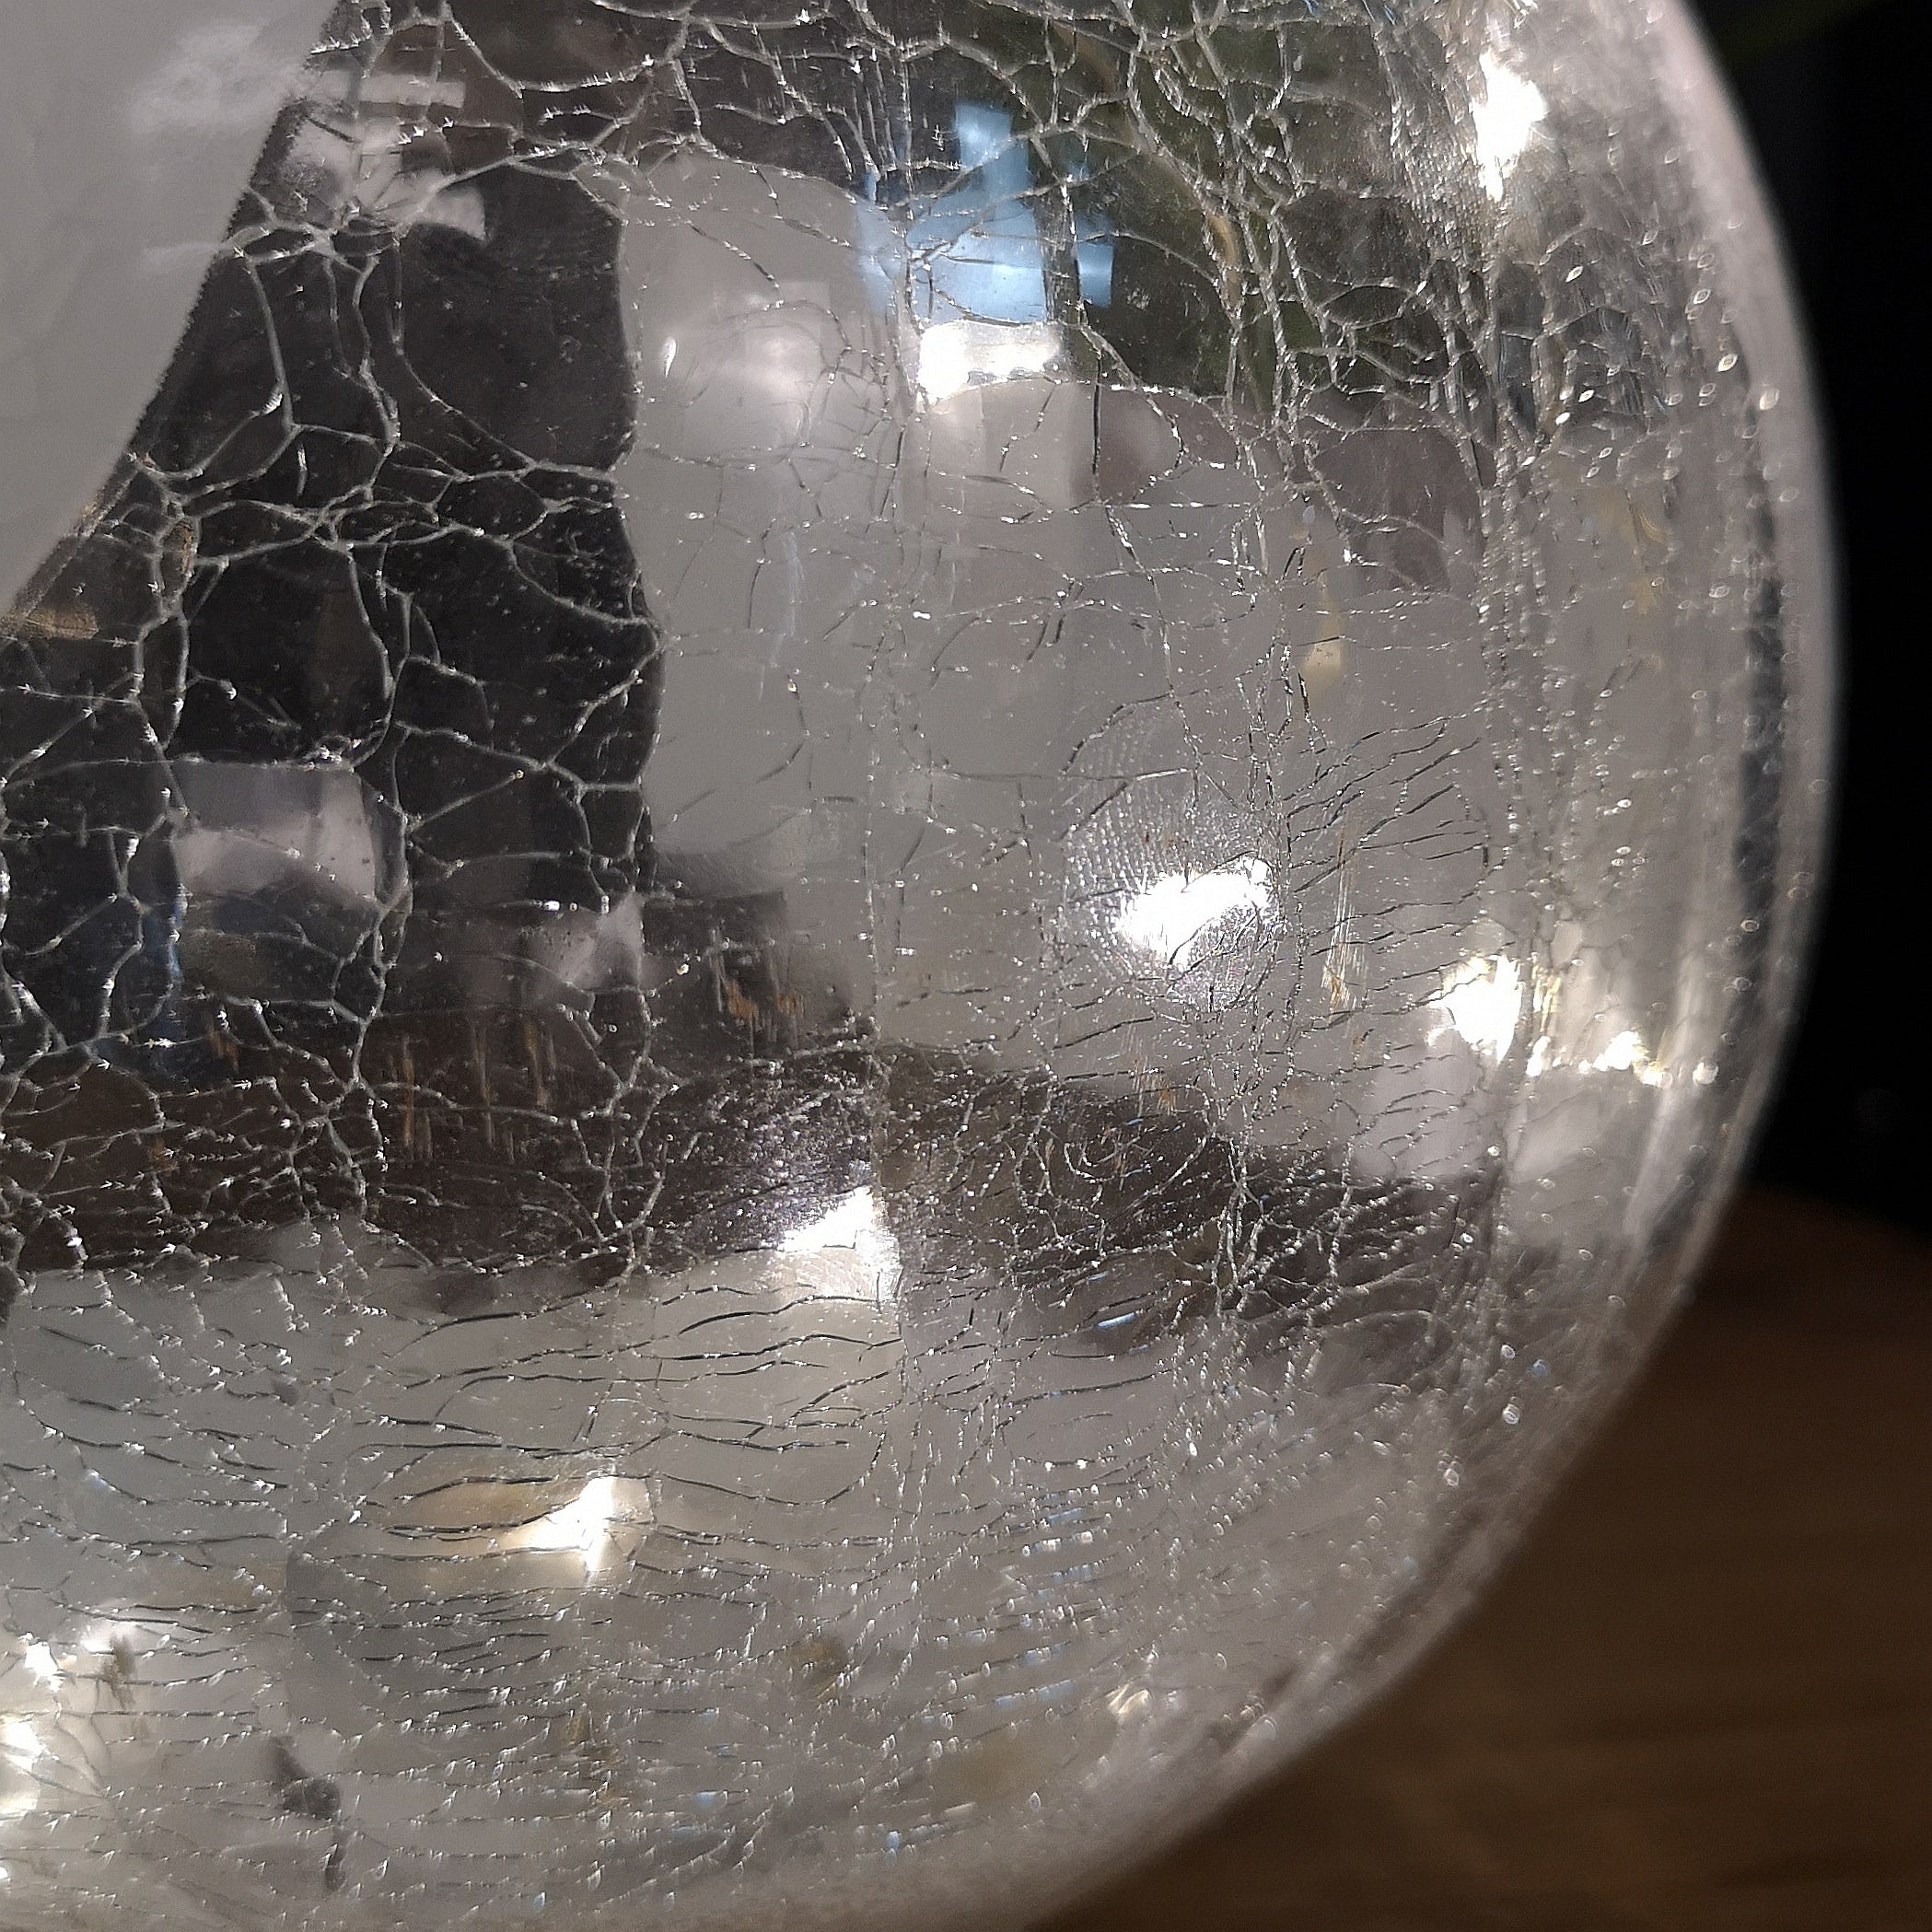 20cm Festive Christmas LED Crackle Effect Glass Penguin Scene Ball